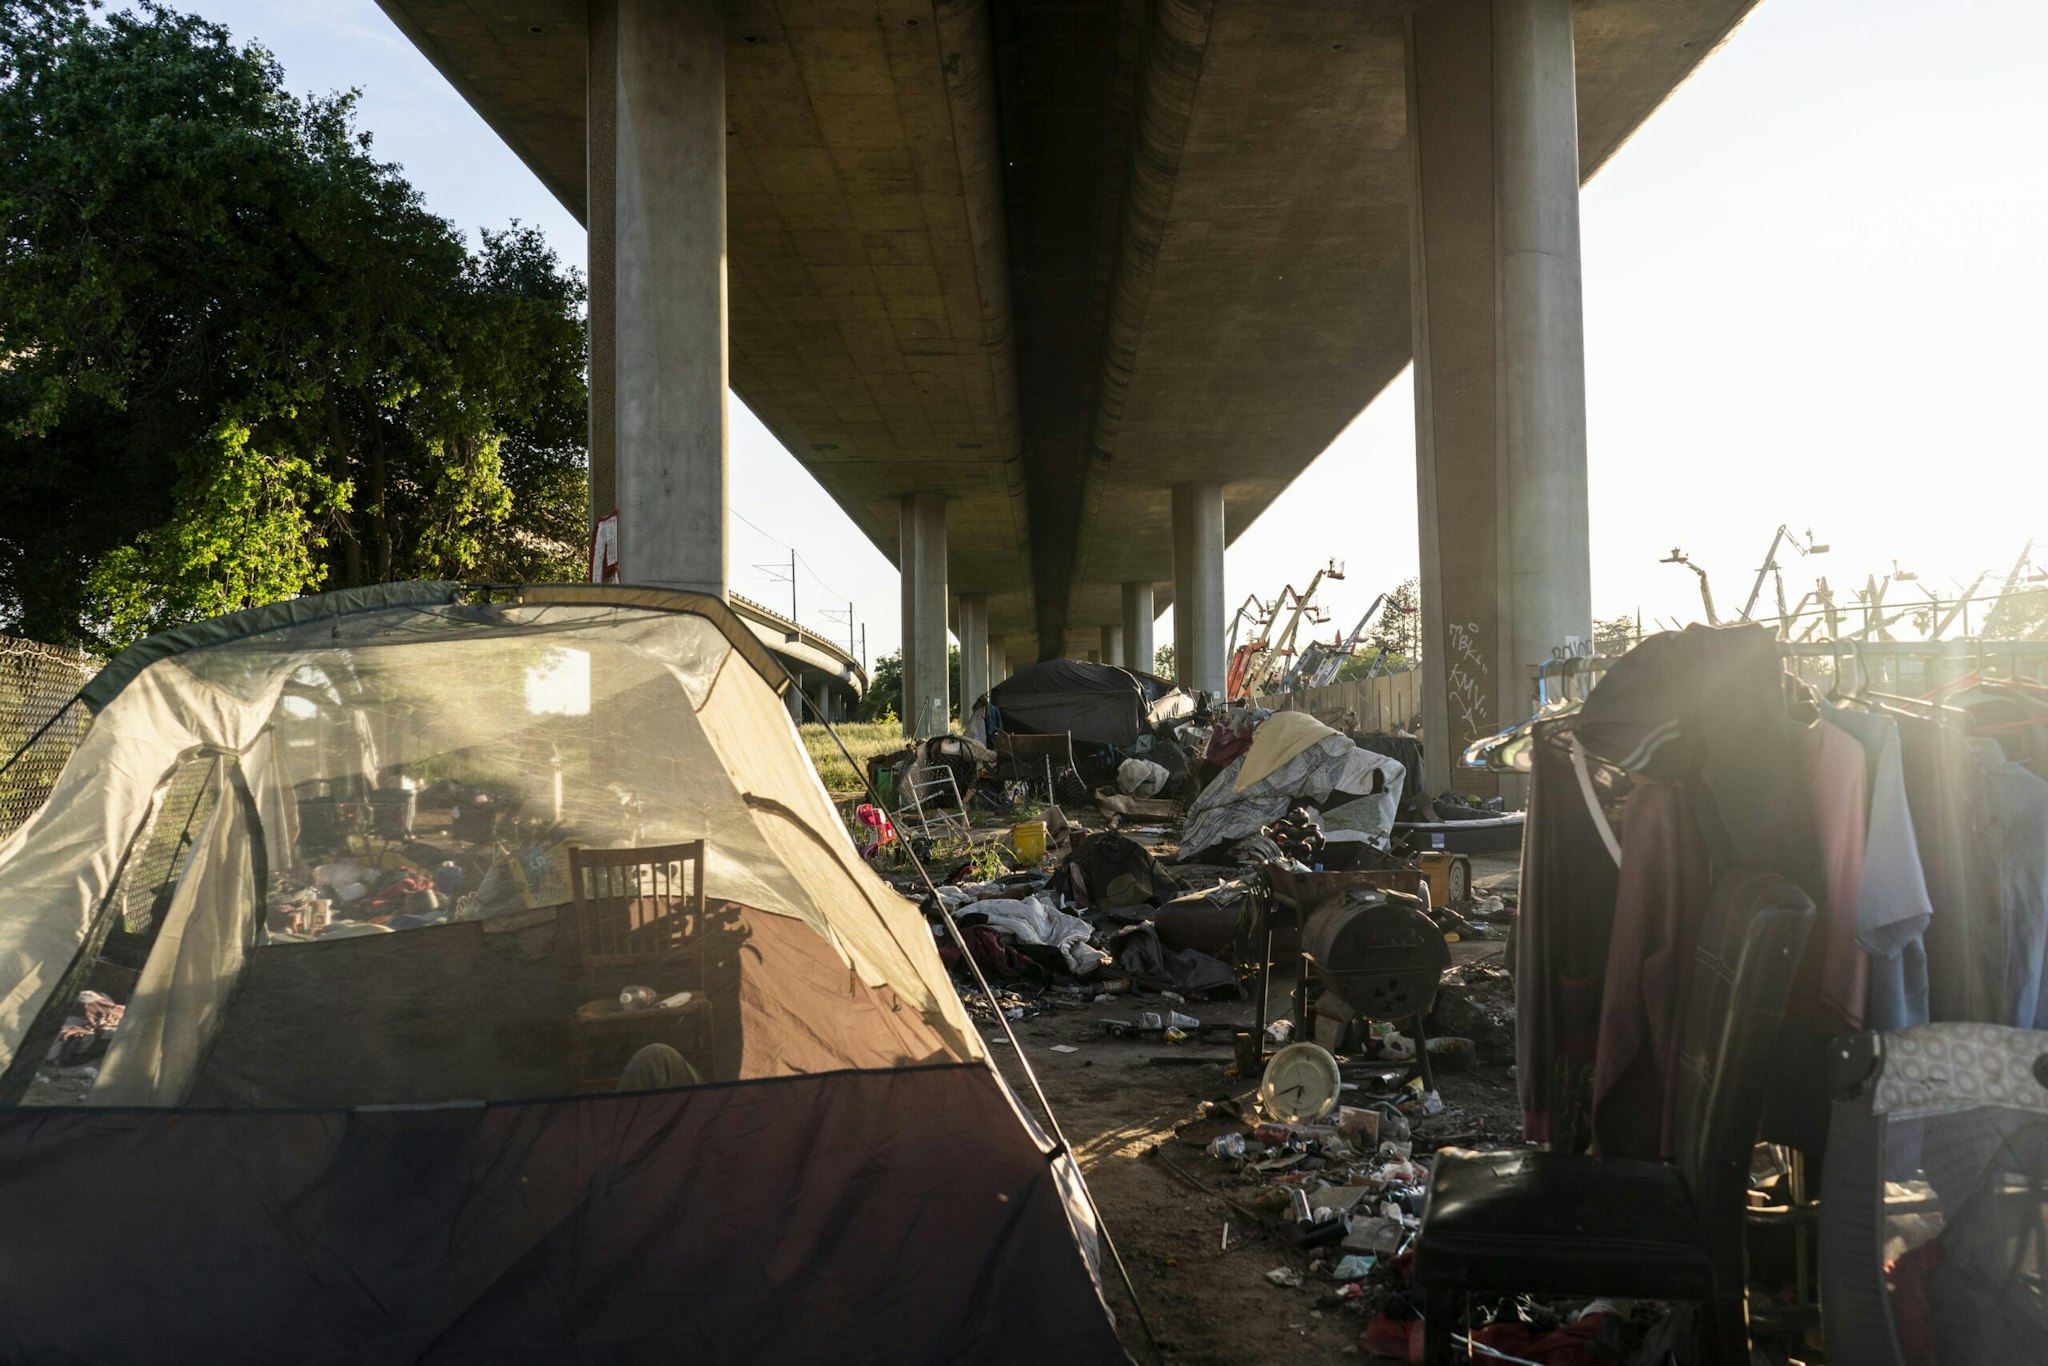 Sacramento Homeless